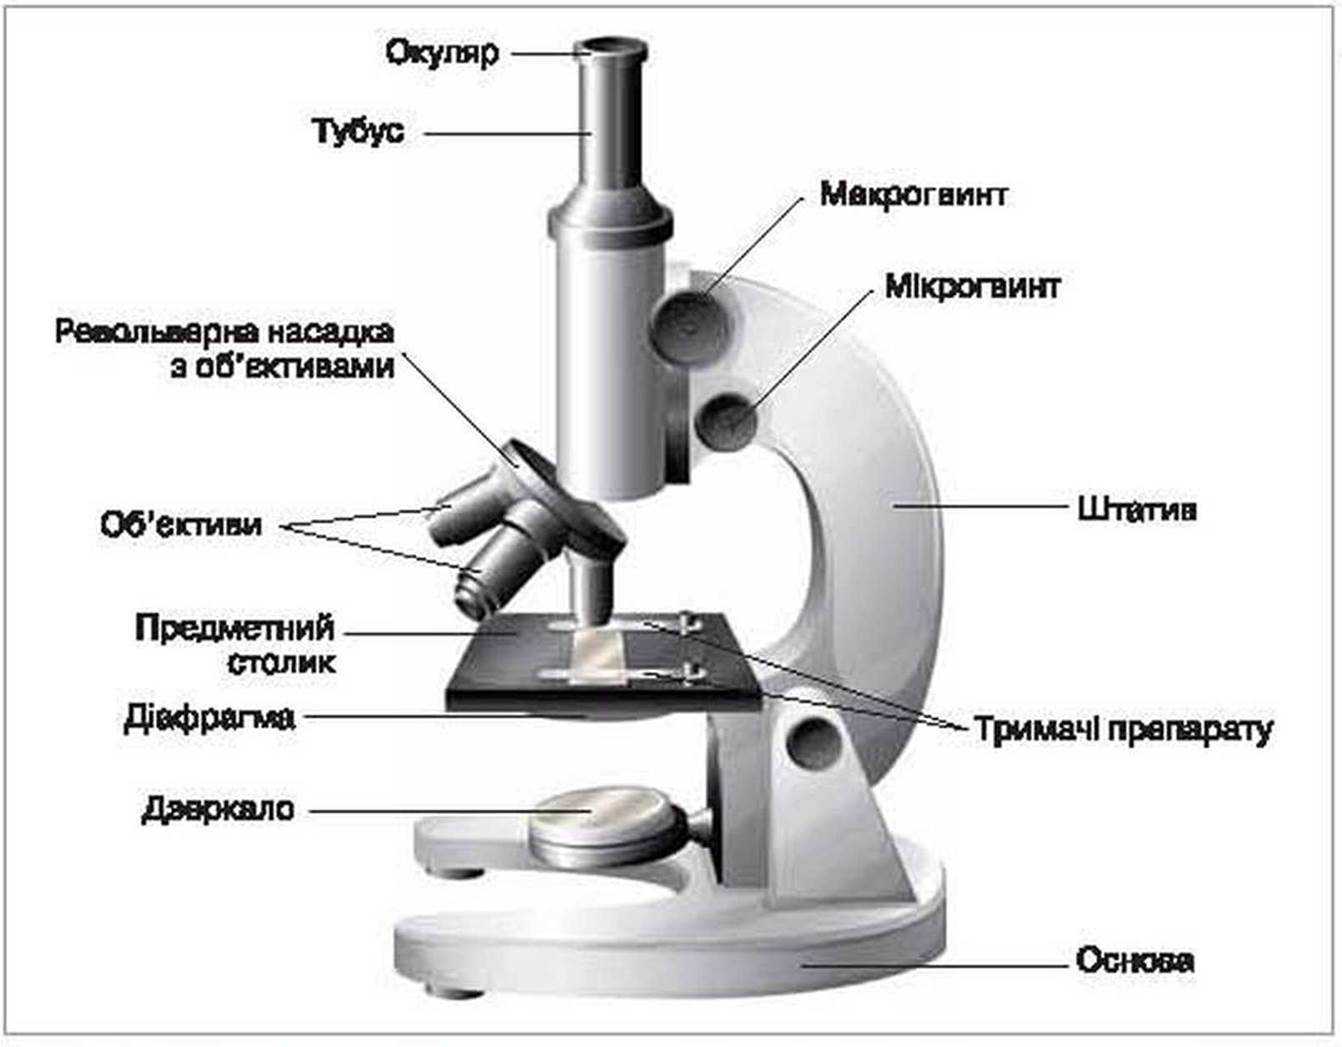 Строение микроскопа - схема устройства с обозначениями и подписями частей